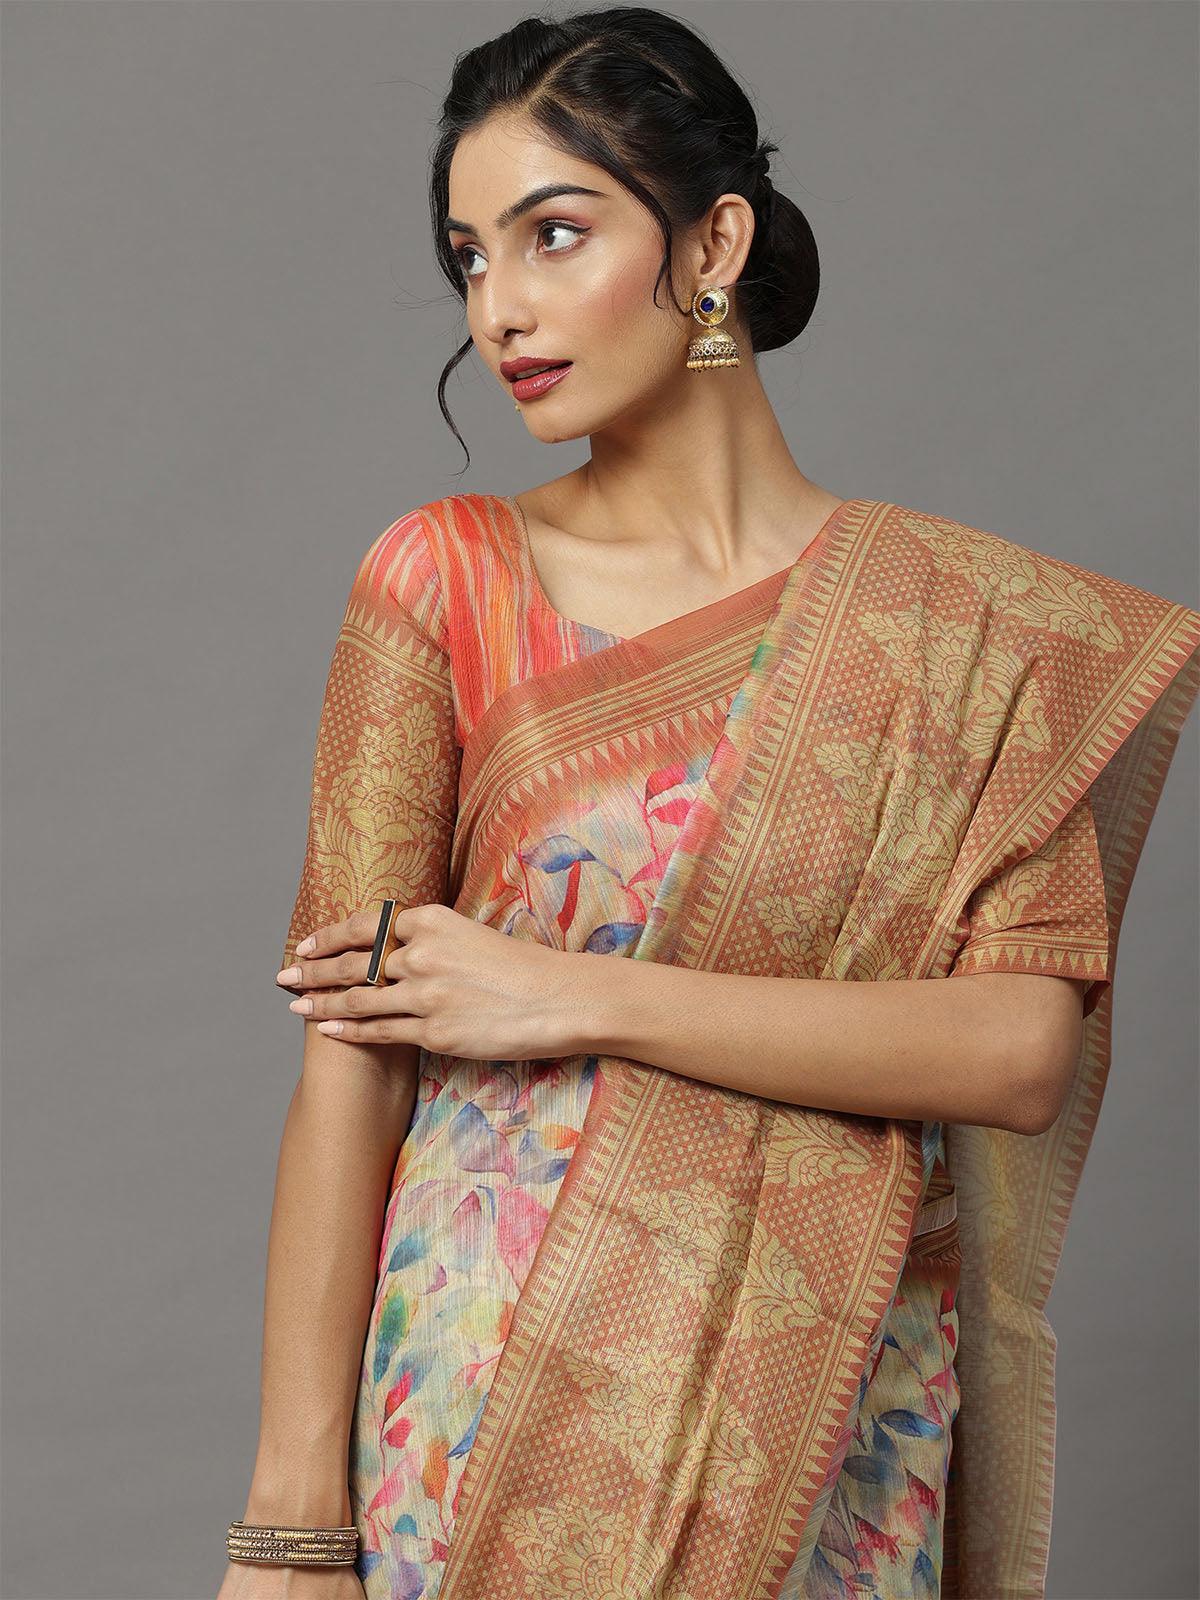 Women's Soft Silk Cream Printed Designer Saree With Blouse Piece - Odette